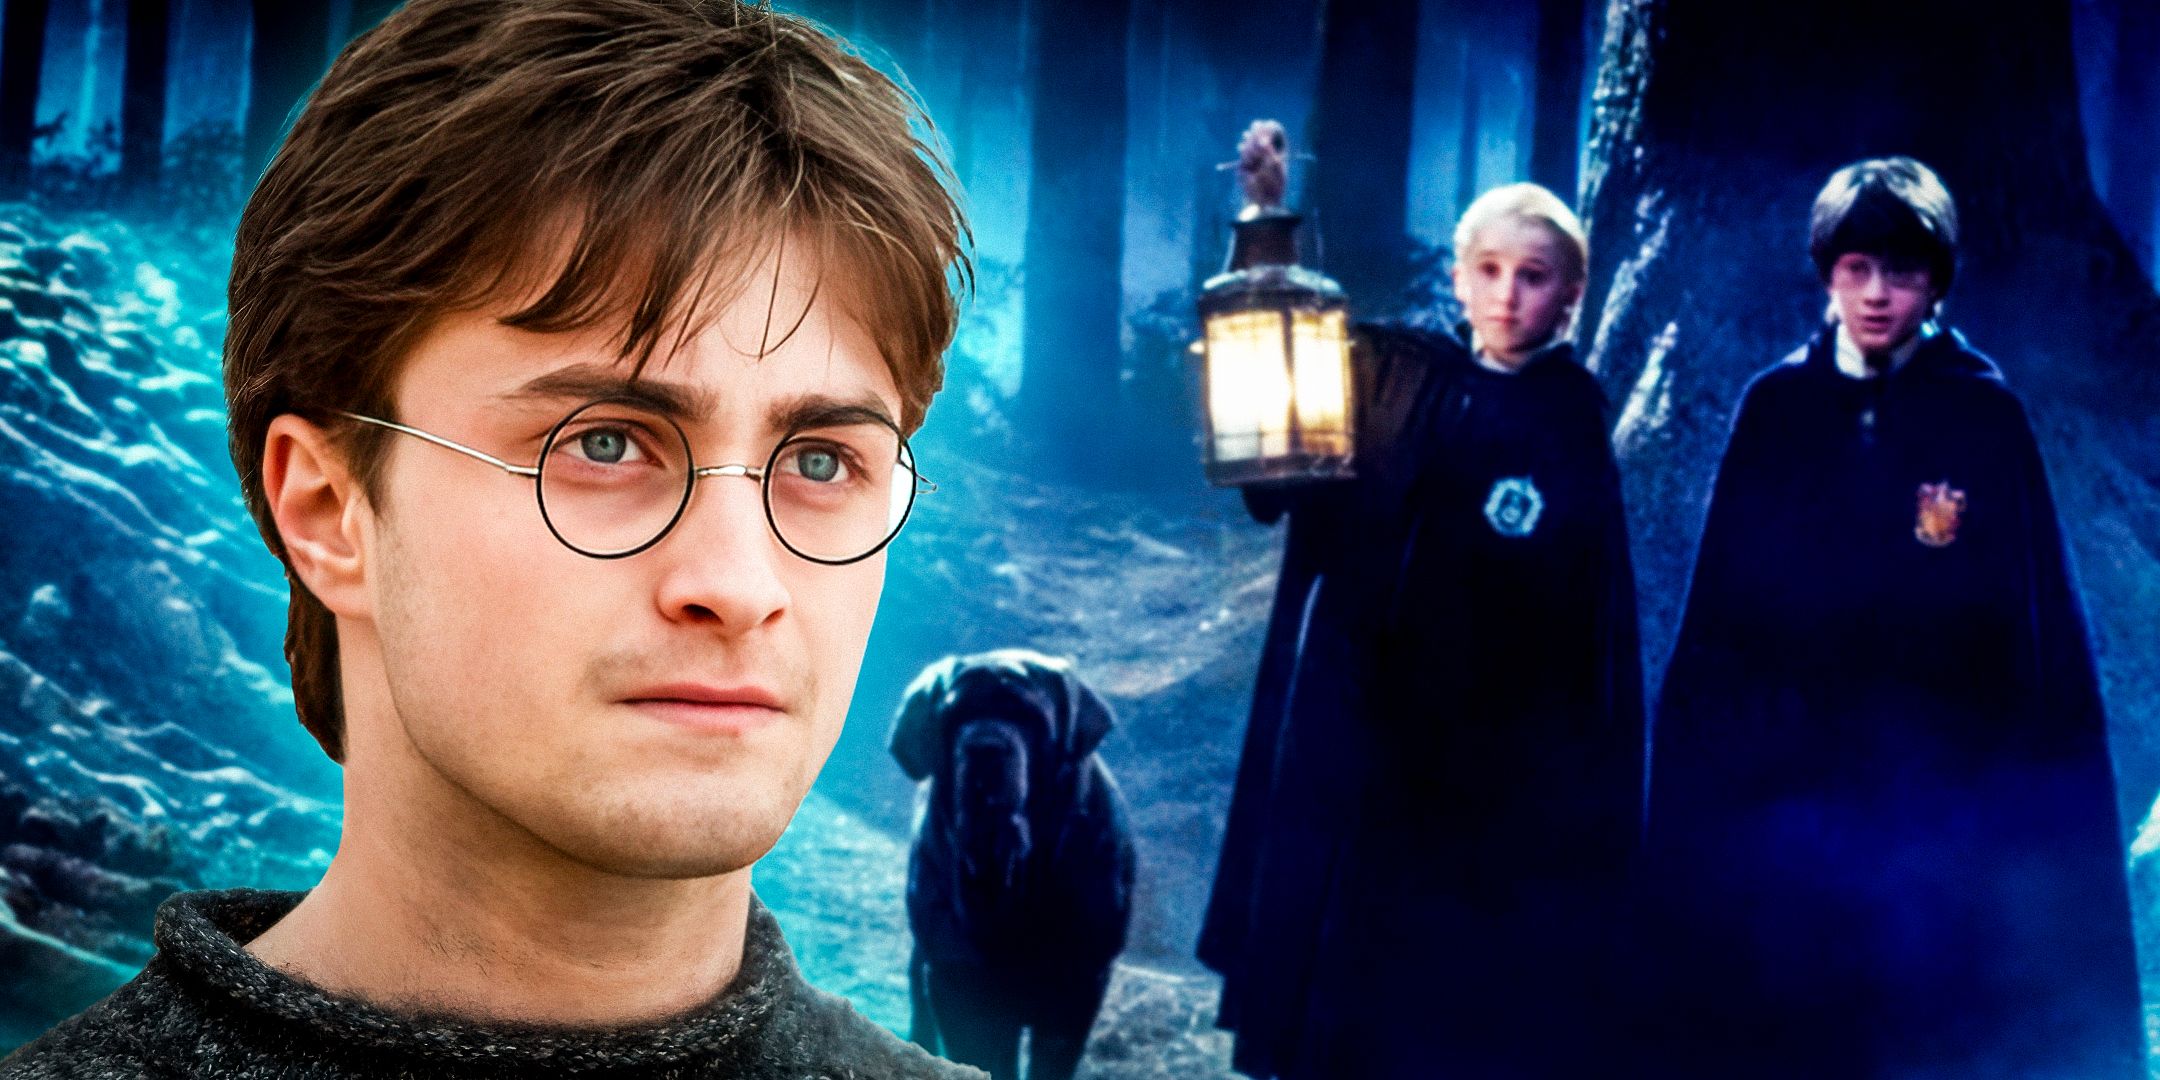 El remake televisivo de Harry Potter finalmente puede hacerle justicia a un personaje clave de los libros (que las películas olvidaron rápidamente)